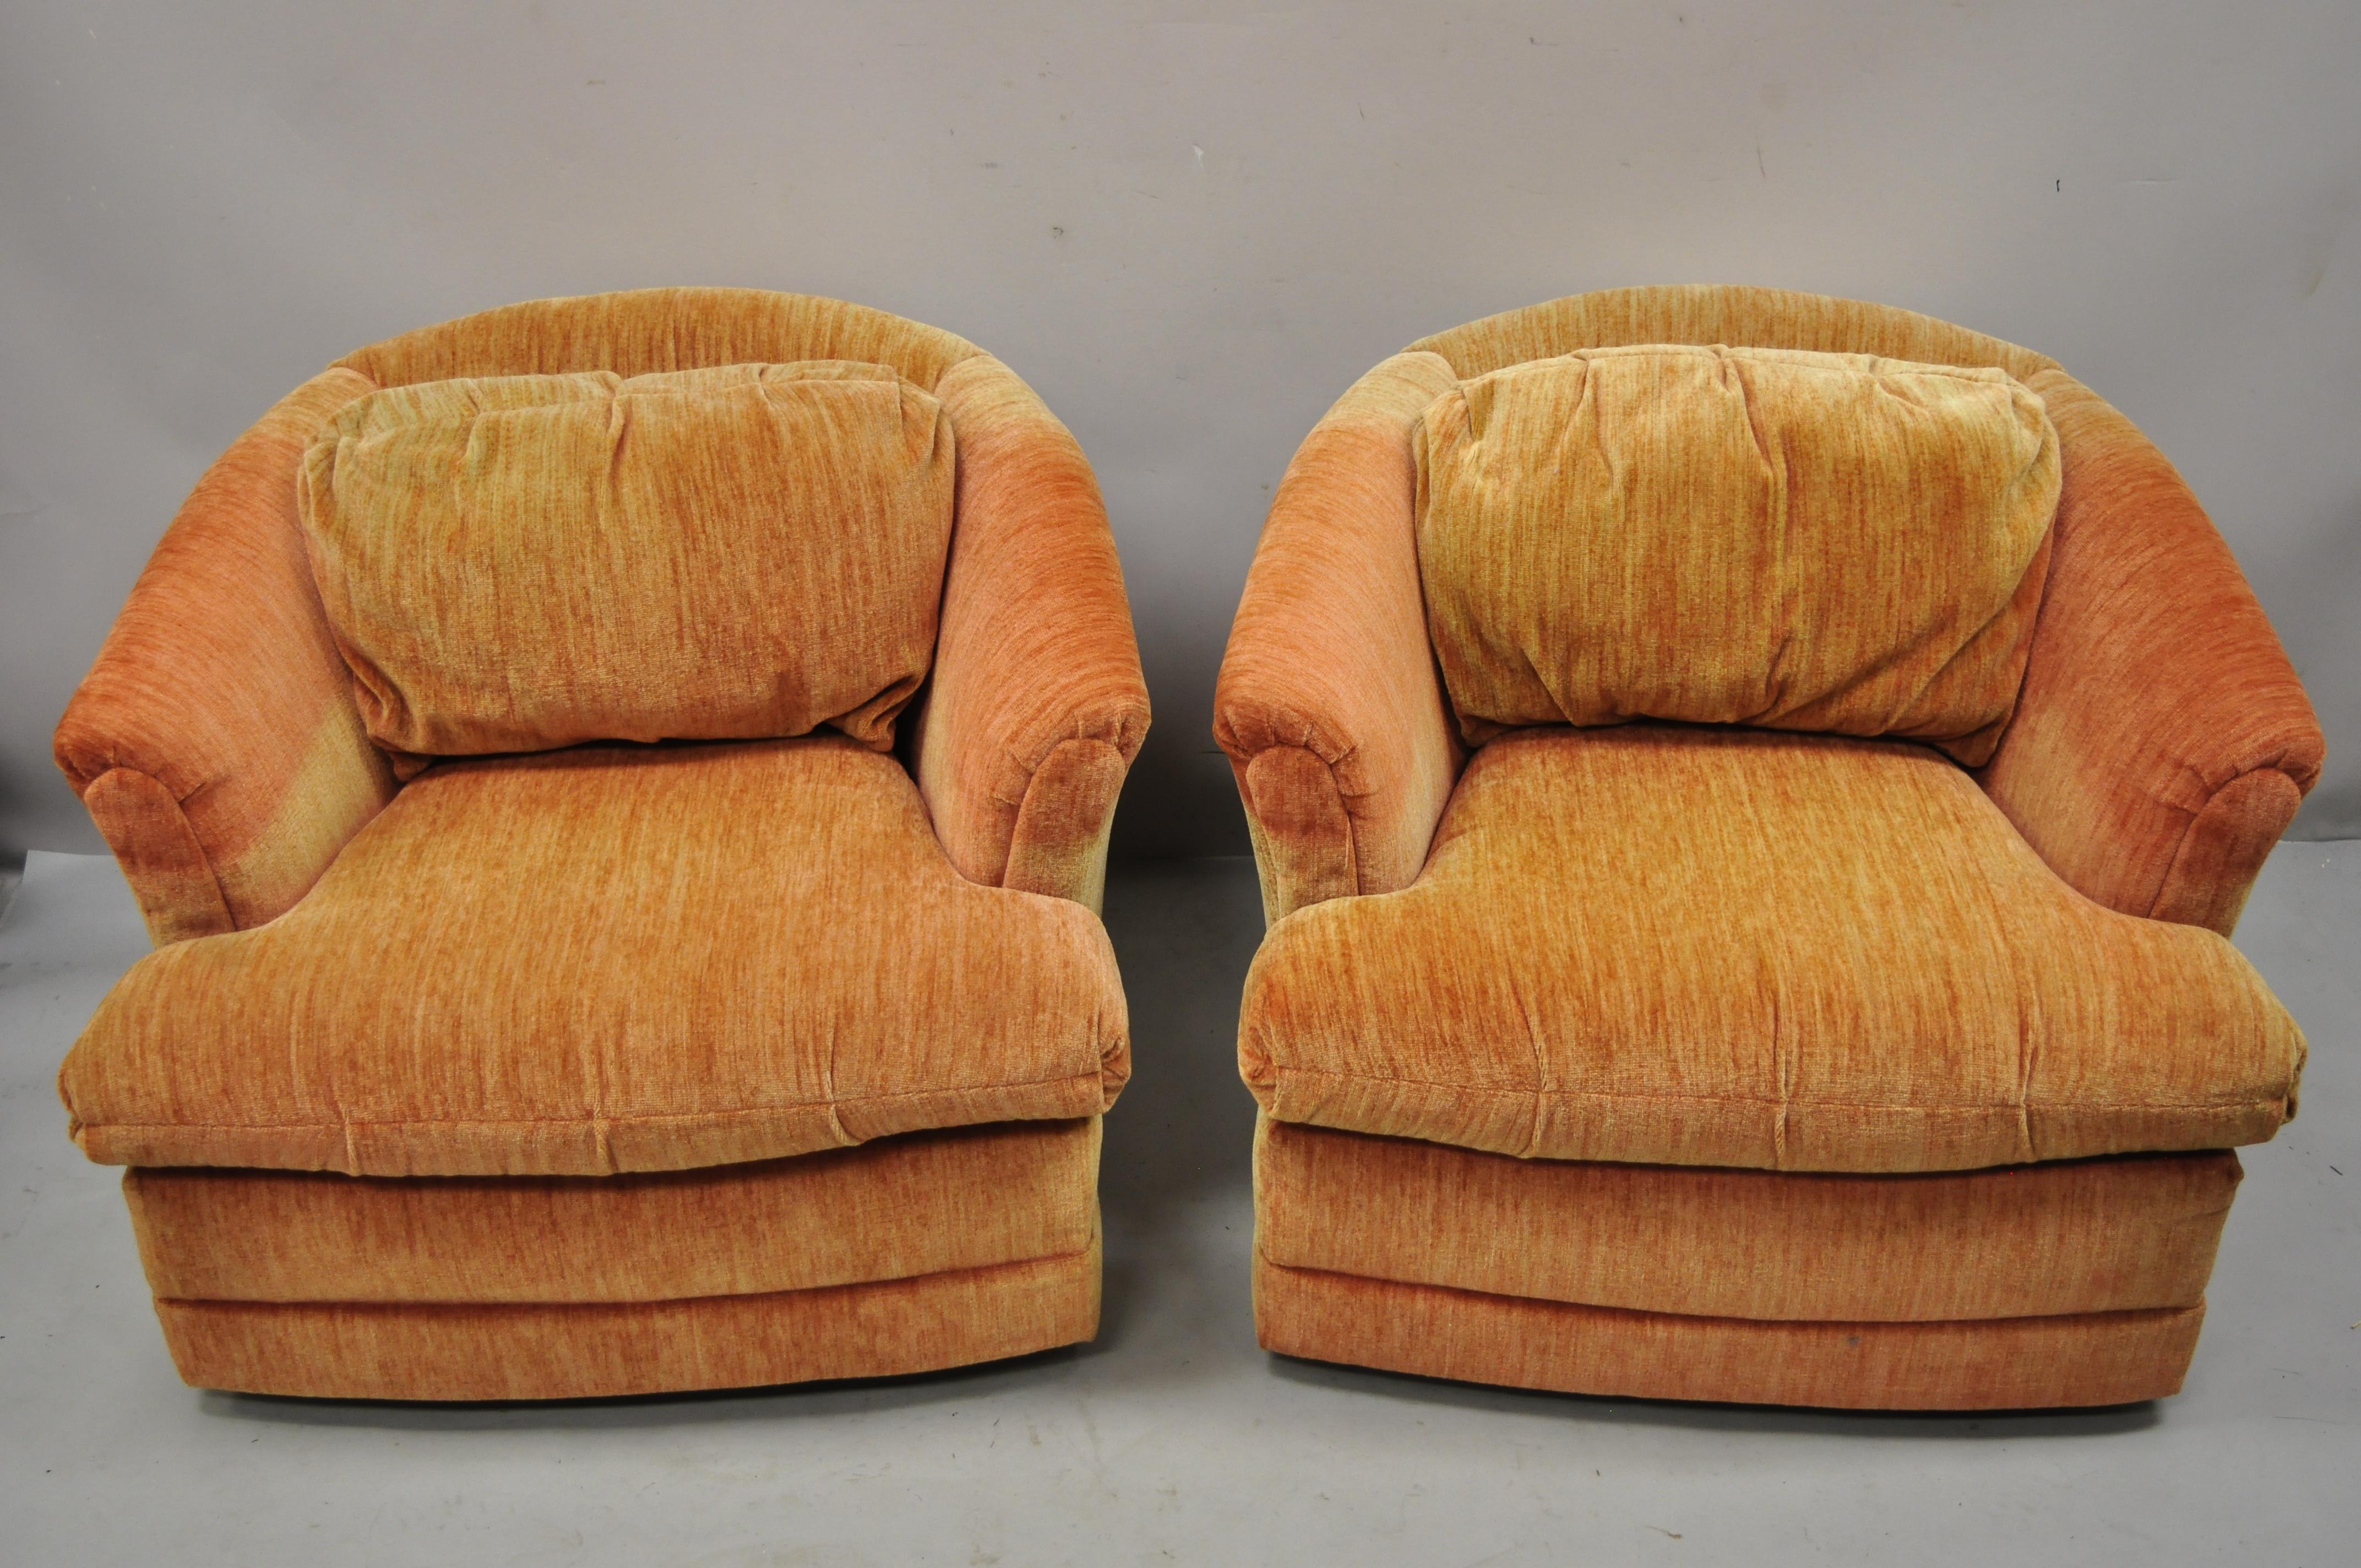 Vintage Flexsteel Mid-Century Modern orange gepolstert swivel lounge club chairs - ein Paar. Drehbarer Sockel, vollständig gepolsterter Rahmen, originales Label, sehr schönes Vintage-Paar, klare modernistische Linien, hochwertige amerikanische